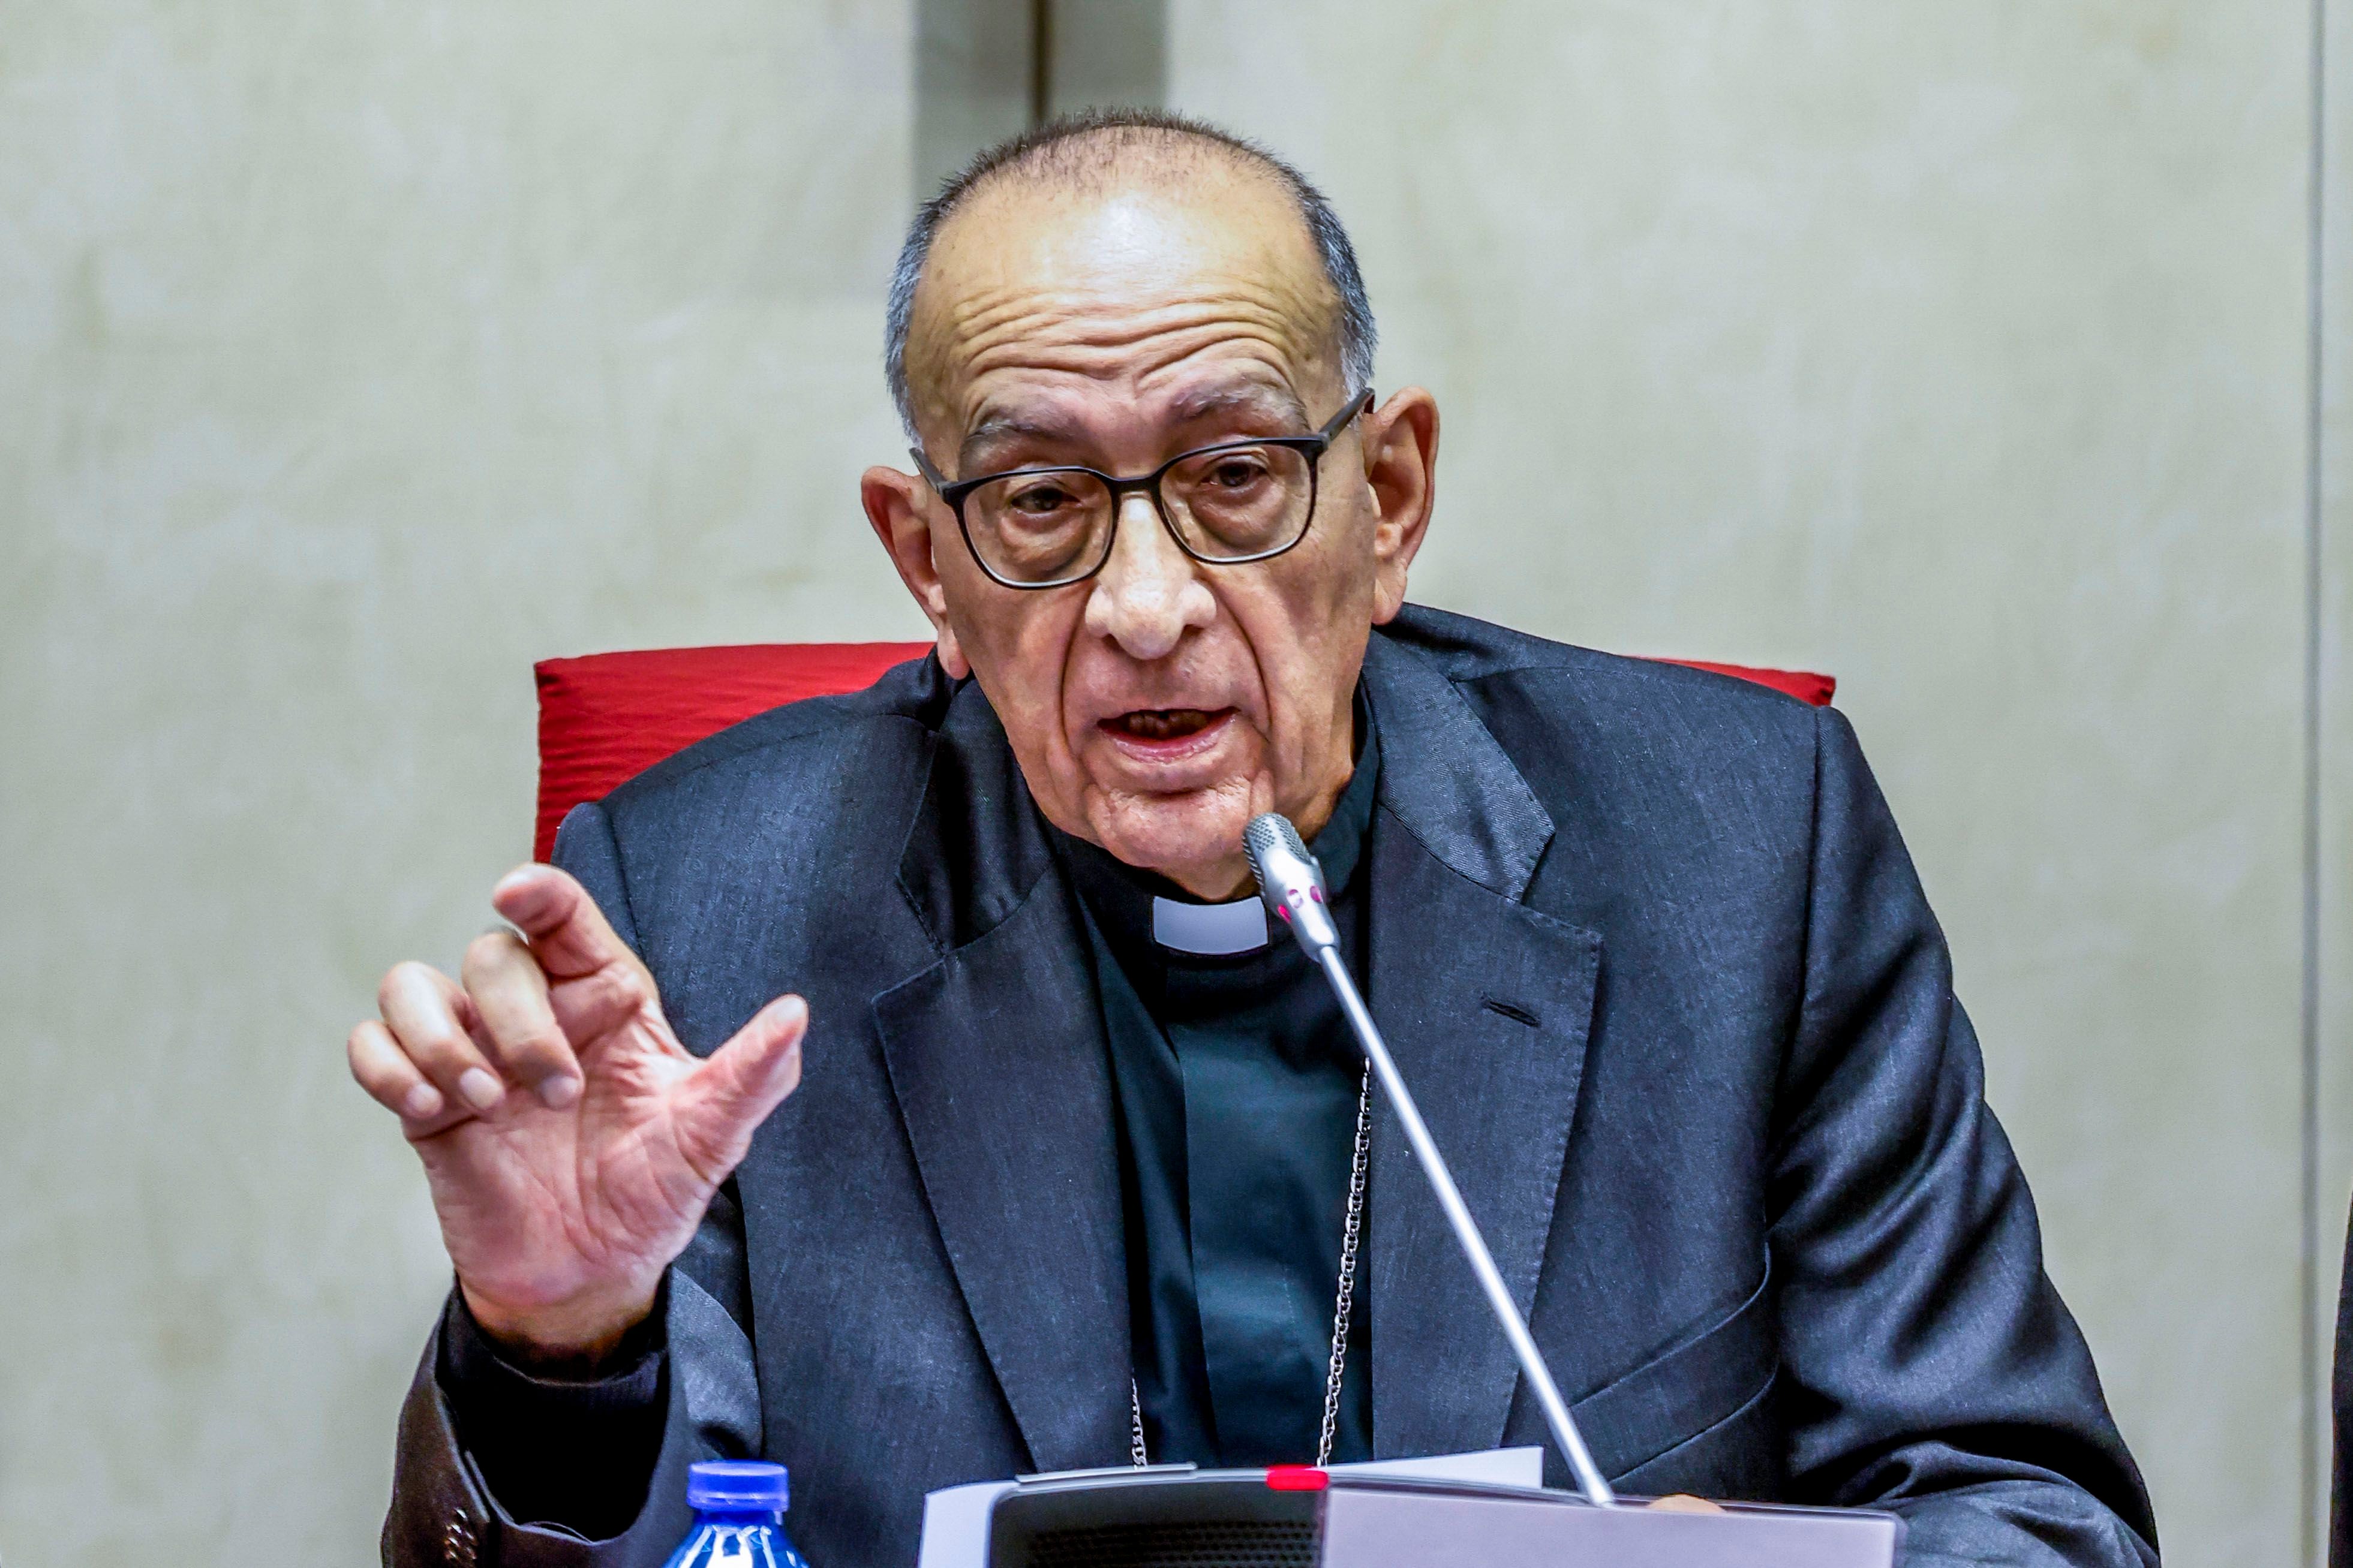 los obispos atacan el informe del defensor sobre pederastia porque “las encuestas no son fiables”